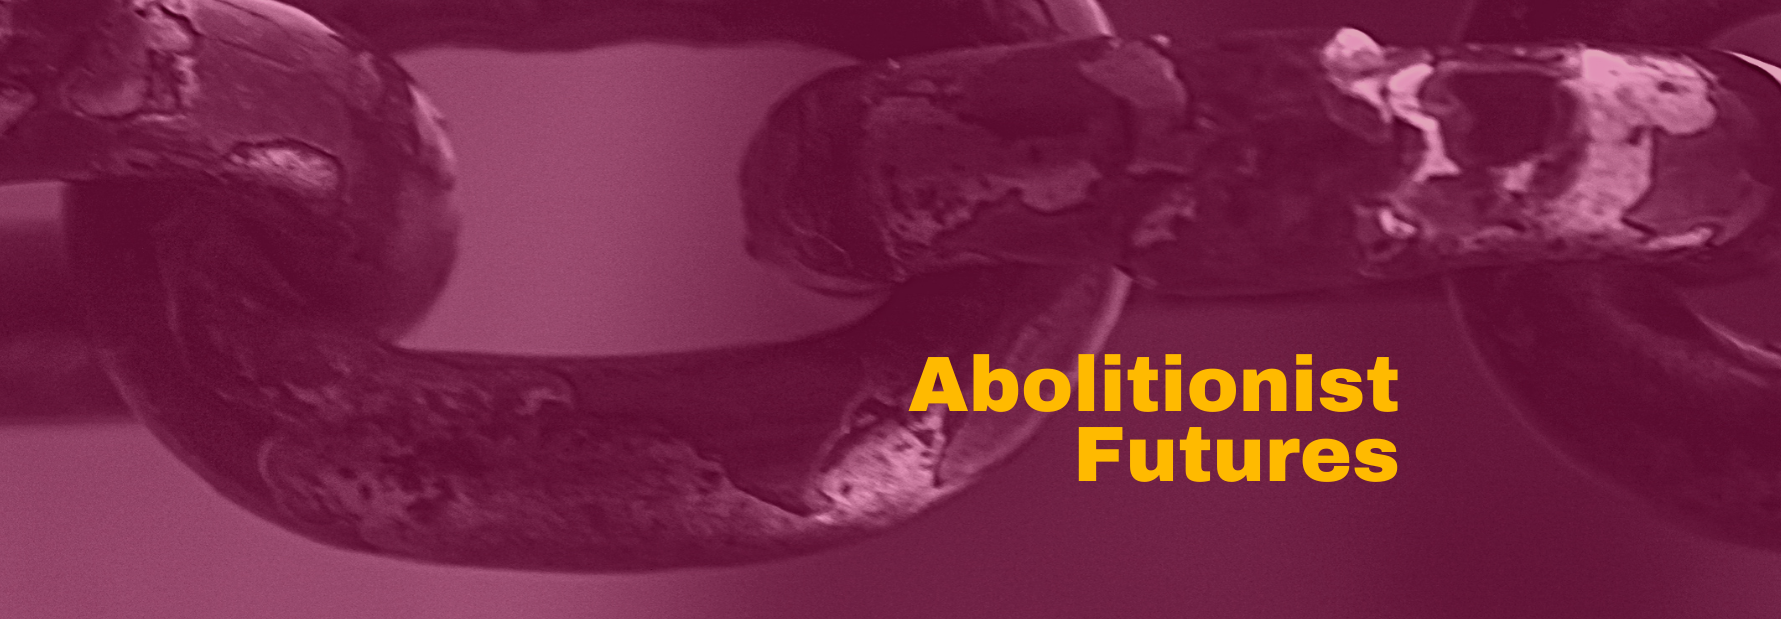 Abolitionist Futures banner